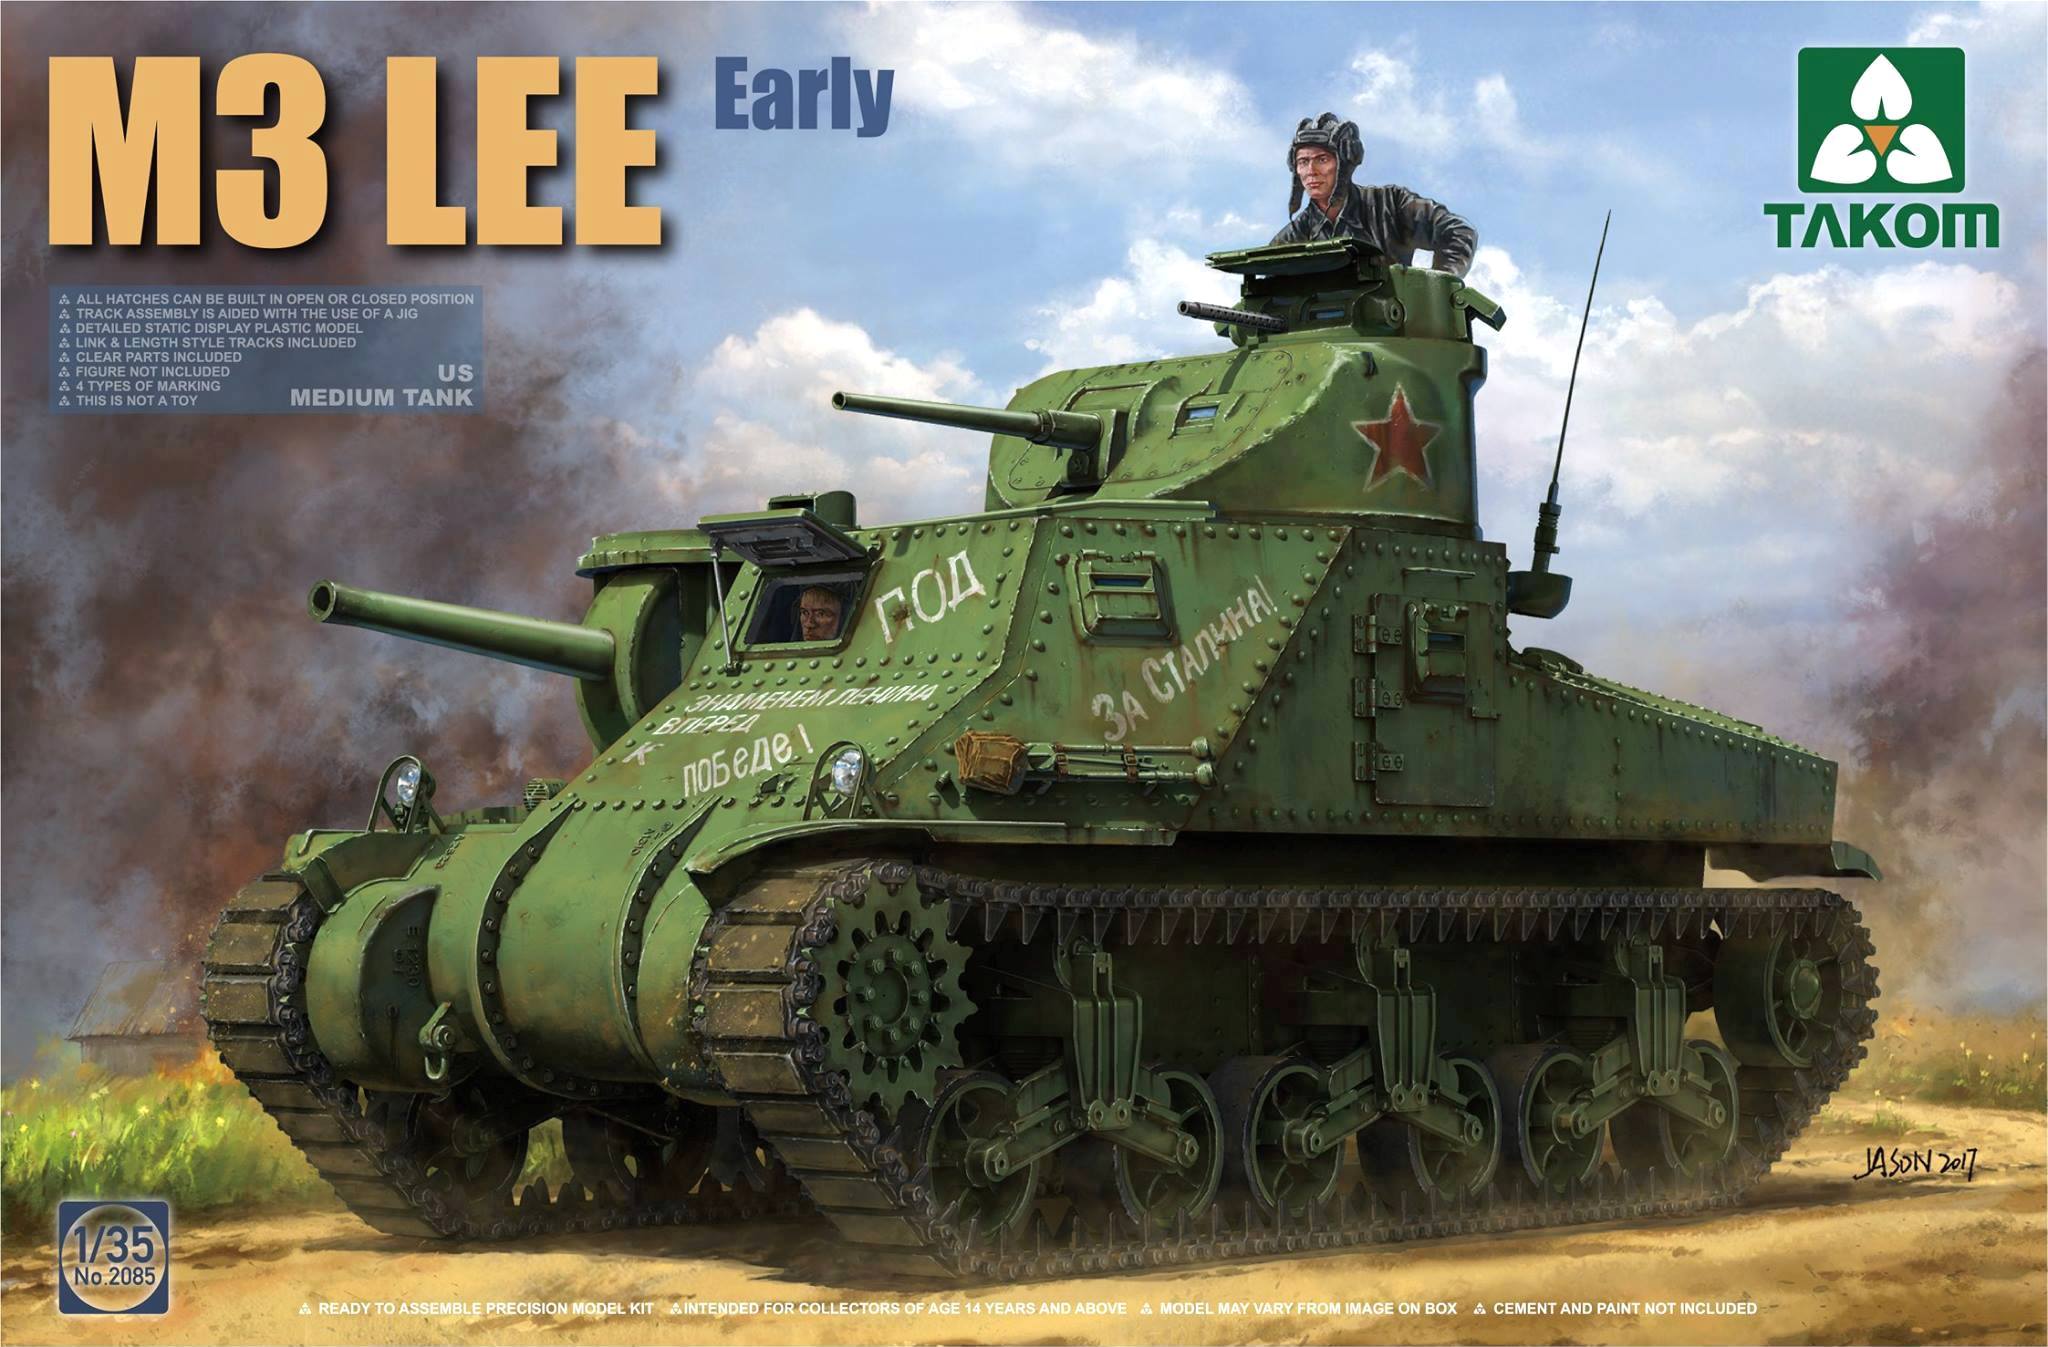 US medium tank M3 Lee - Early